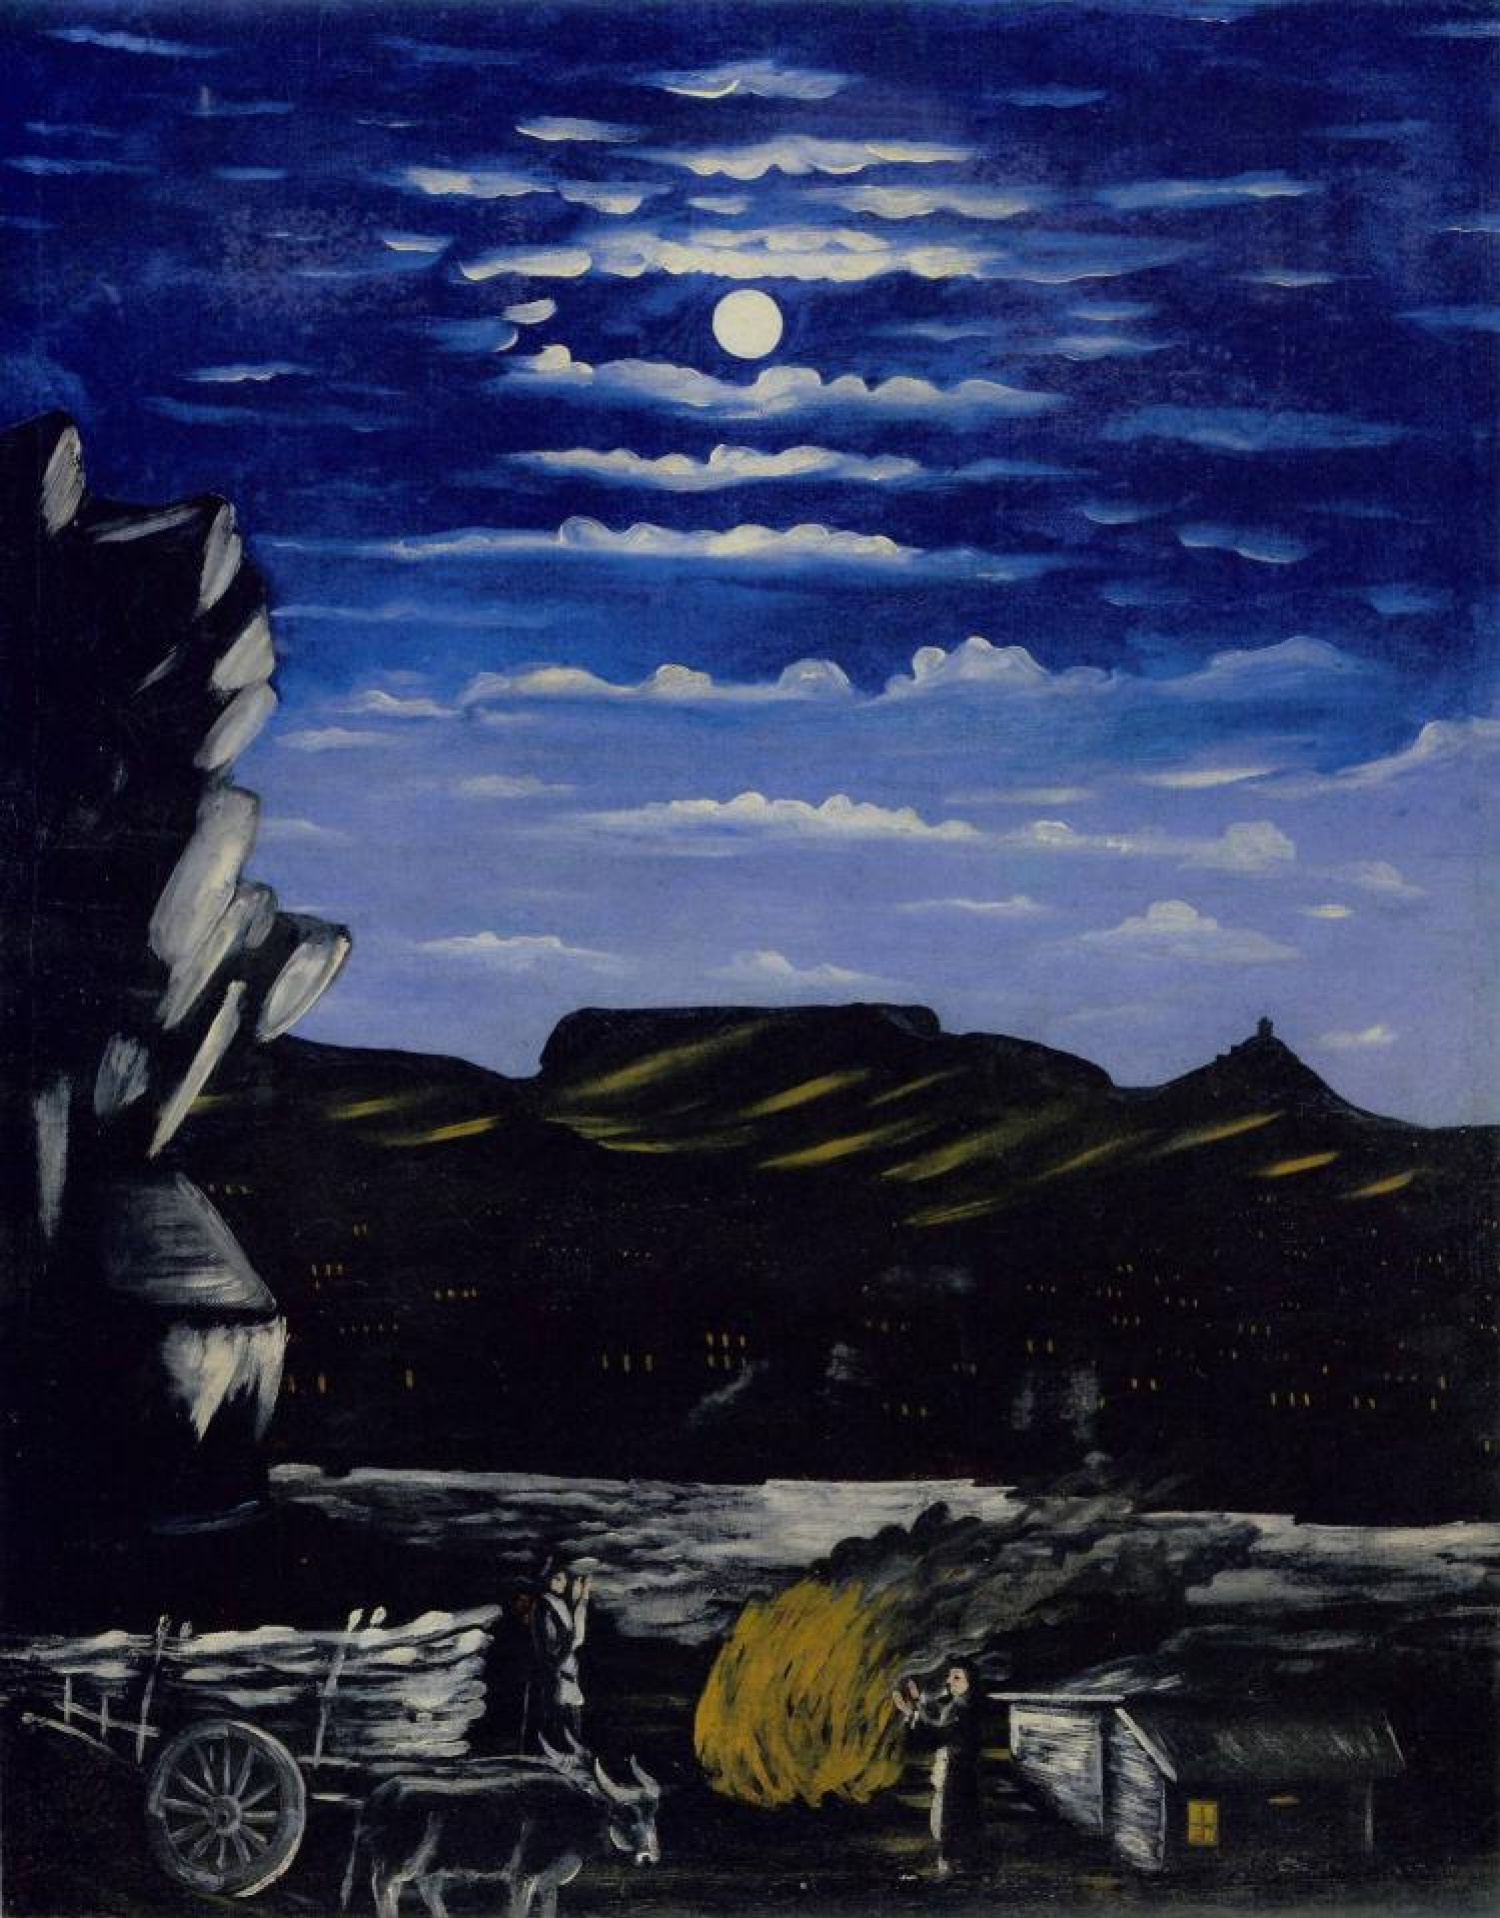 Sinceramente Sophie Ciudad Niko Pirosmani (Pirosmanashvili) Arsenalskaya montaña en la noche, 1908,  91×113 cm: Descripción de la obra | Arthive